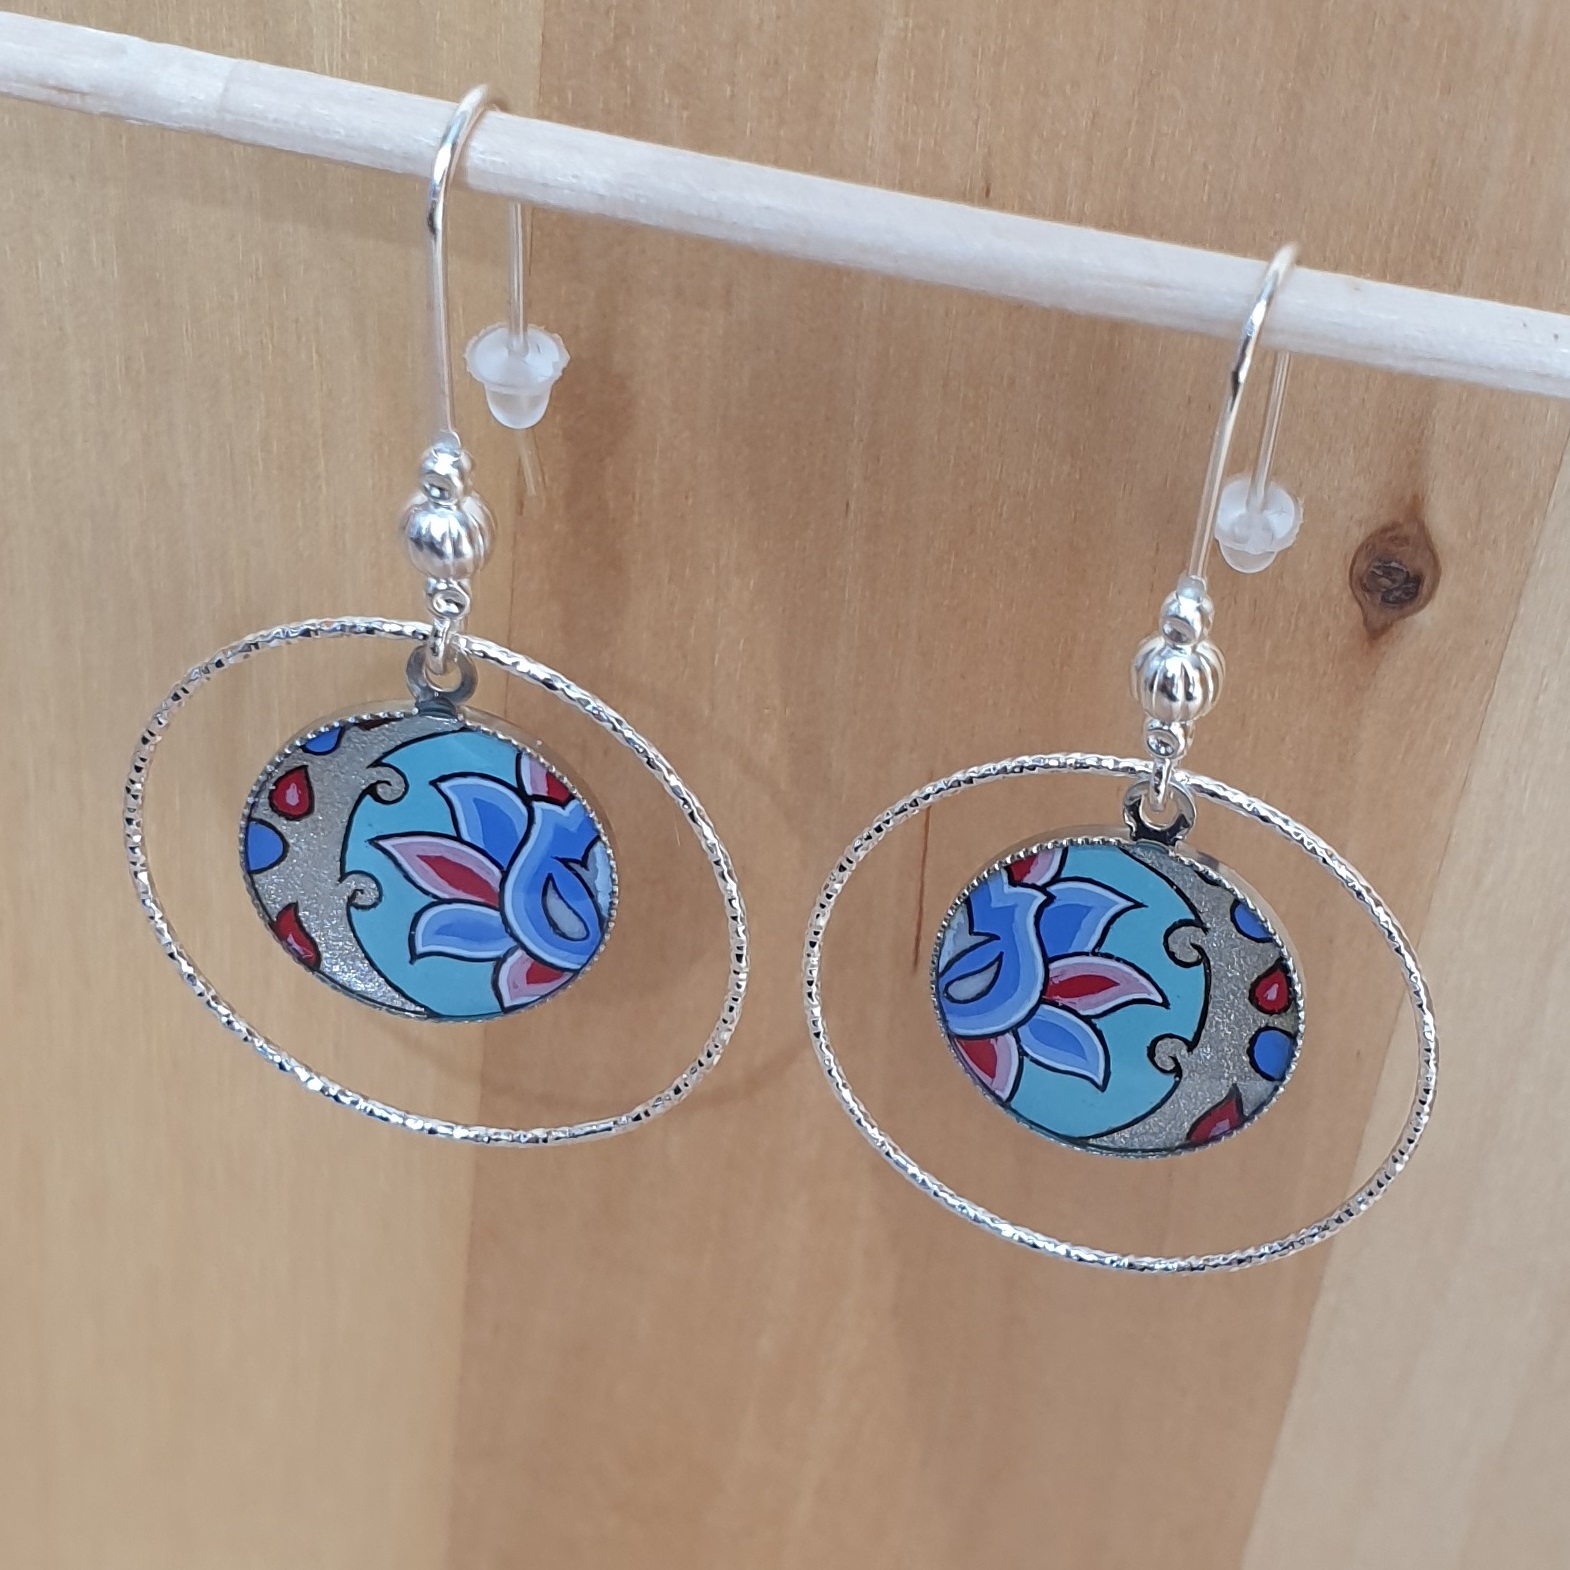 Boucles d'oreille enluminées fleur et arabesque vert/argenté/bleu/rosé